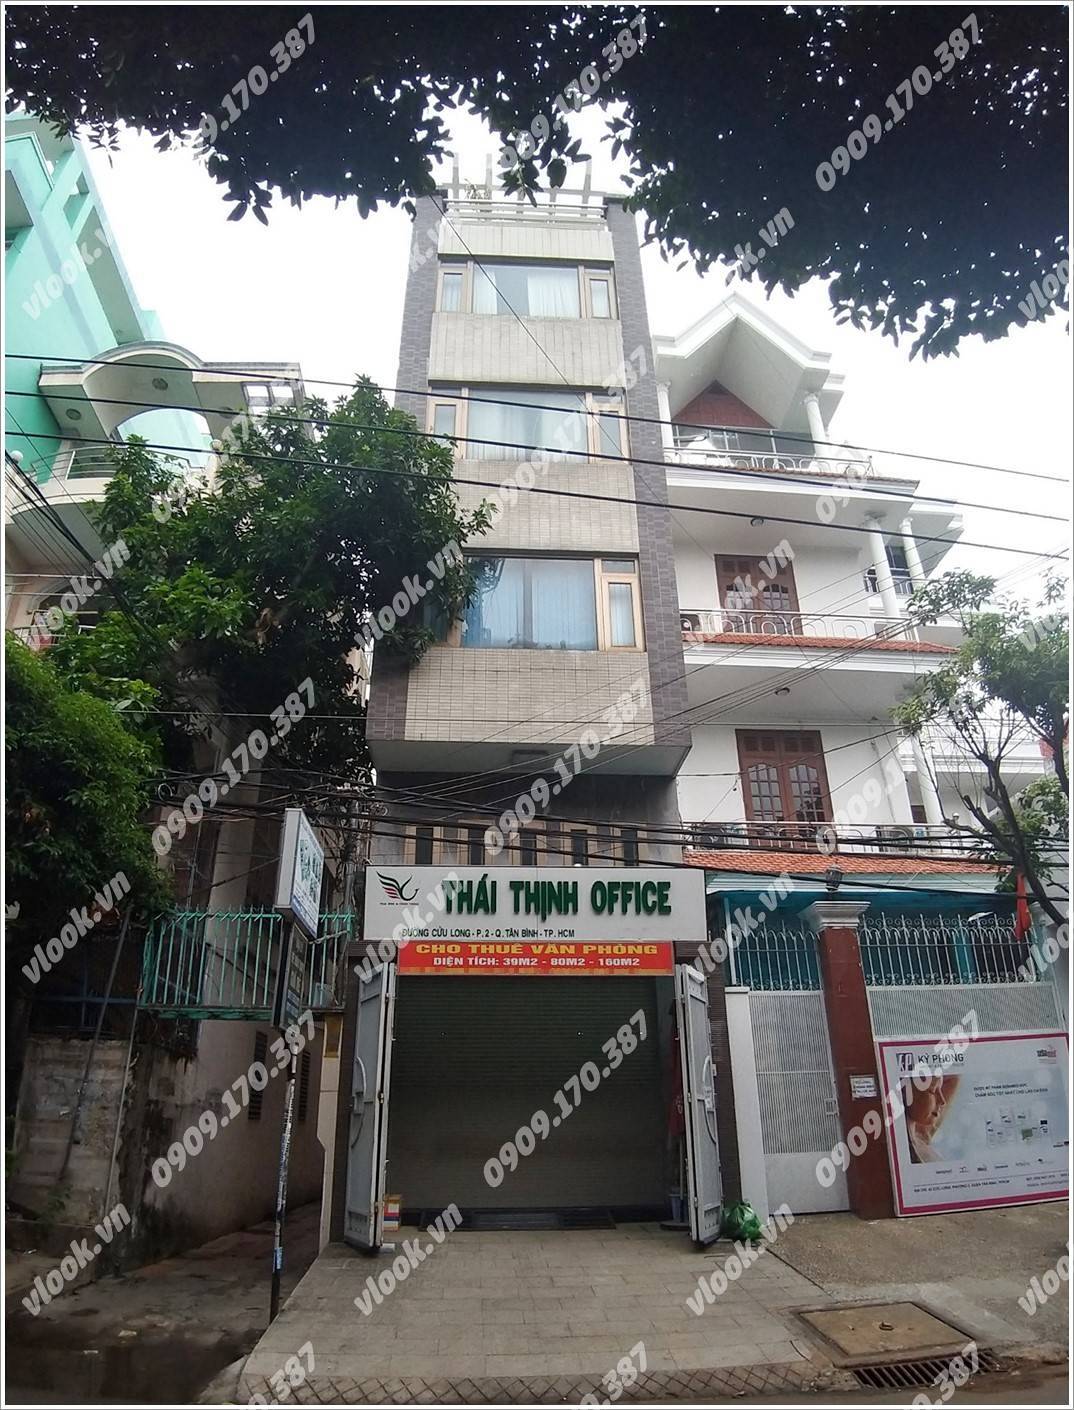 Cao ốc văn phòng cho thuê toà nhà Thái Thịnh Office, Cửu Long, Quận Tân Bình, TPHCM - vlook.vn